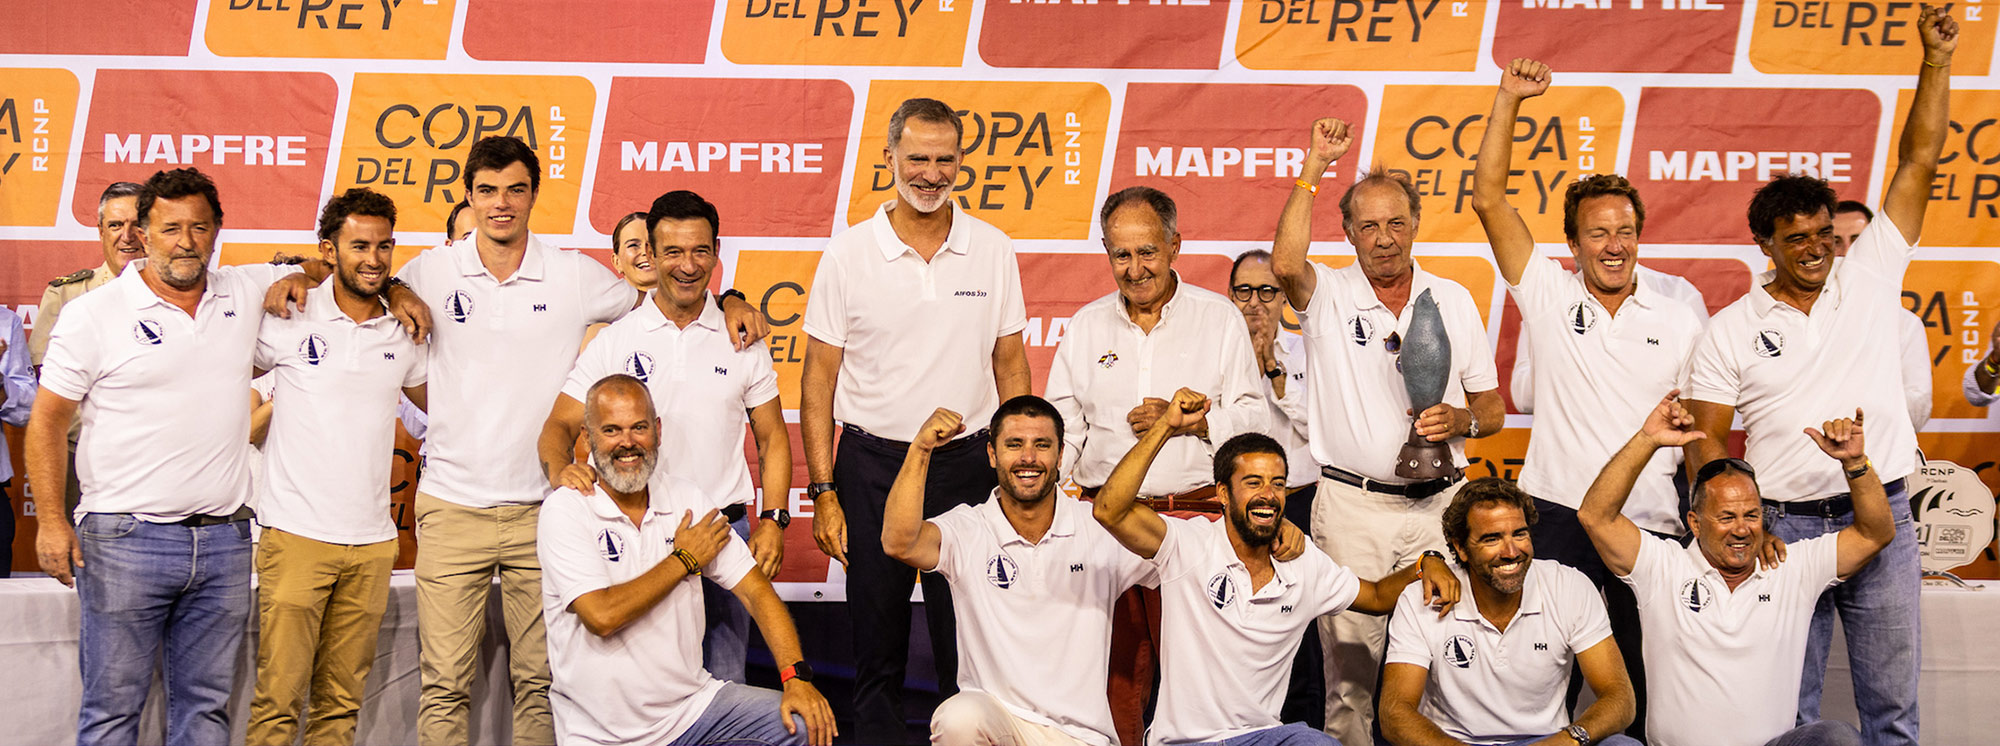 pbx sailing team - ganador copa del rey mapfre - palibex